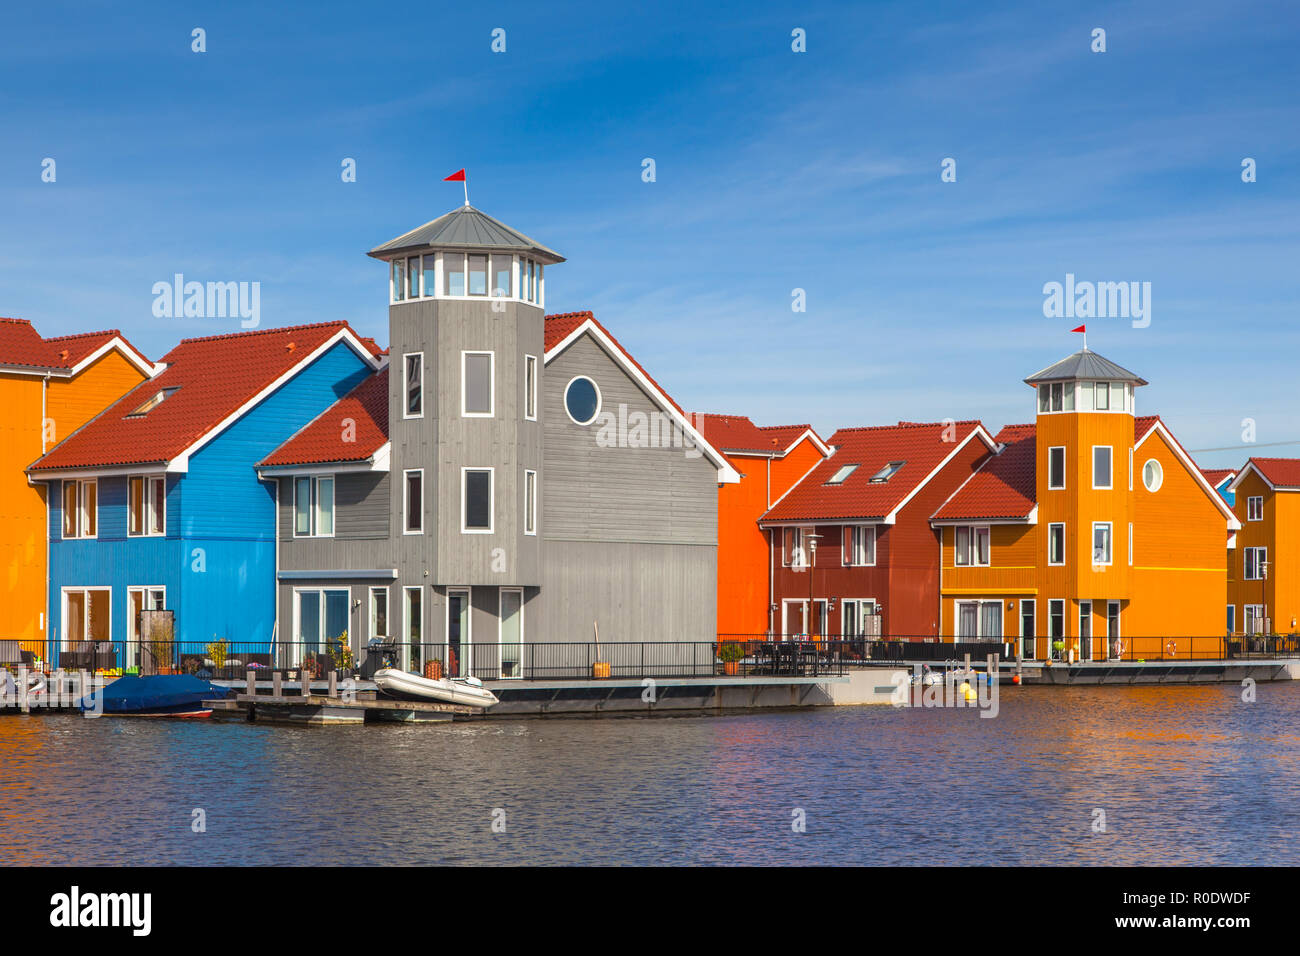 Maisons au bord de l'eau en différentes couleurs à Groningue, Pays-Bas Banque D'Images